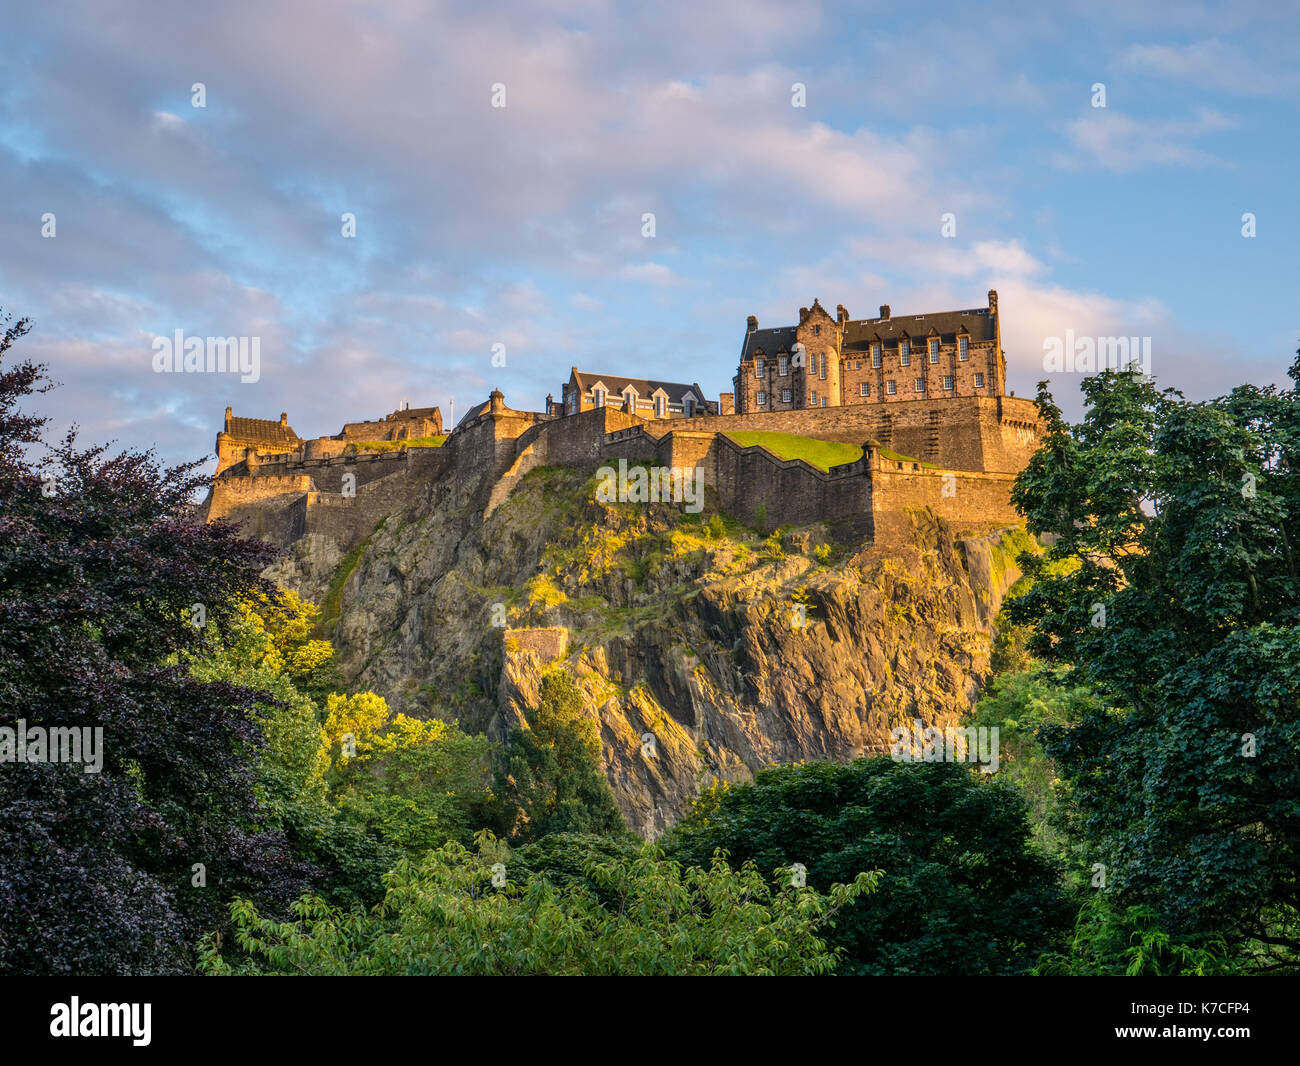 Sunset, el Castillo de Edimburgo, visto desde los jardines de Princes Street, Edinburgh Castle, Castle Rock, Edimburgo, Escocia, Reino Unido, GB. Foto de stock